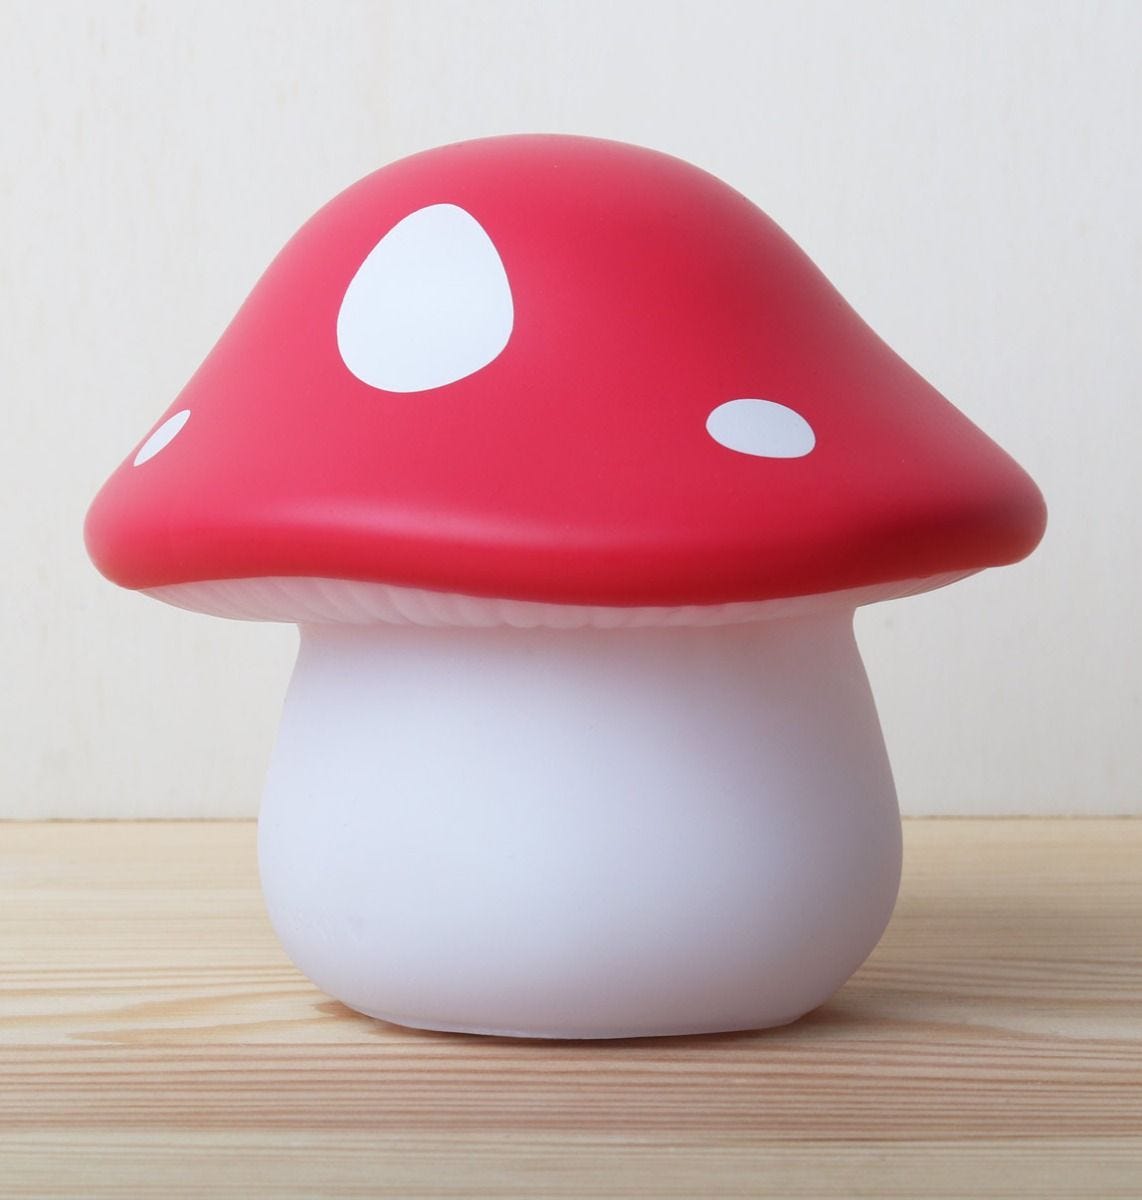 llhowh69-lr-5-little-light-mushroom-red